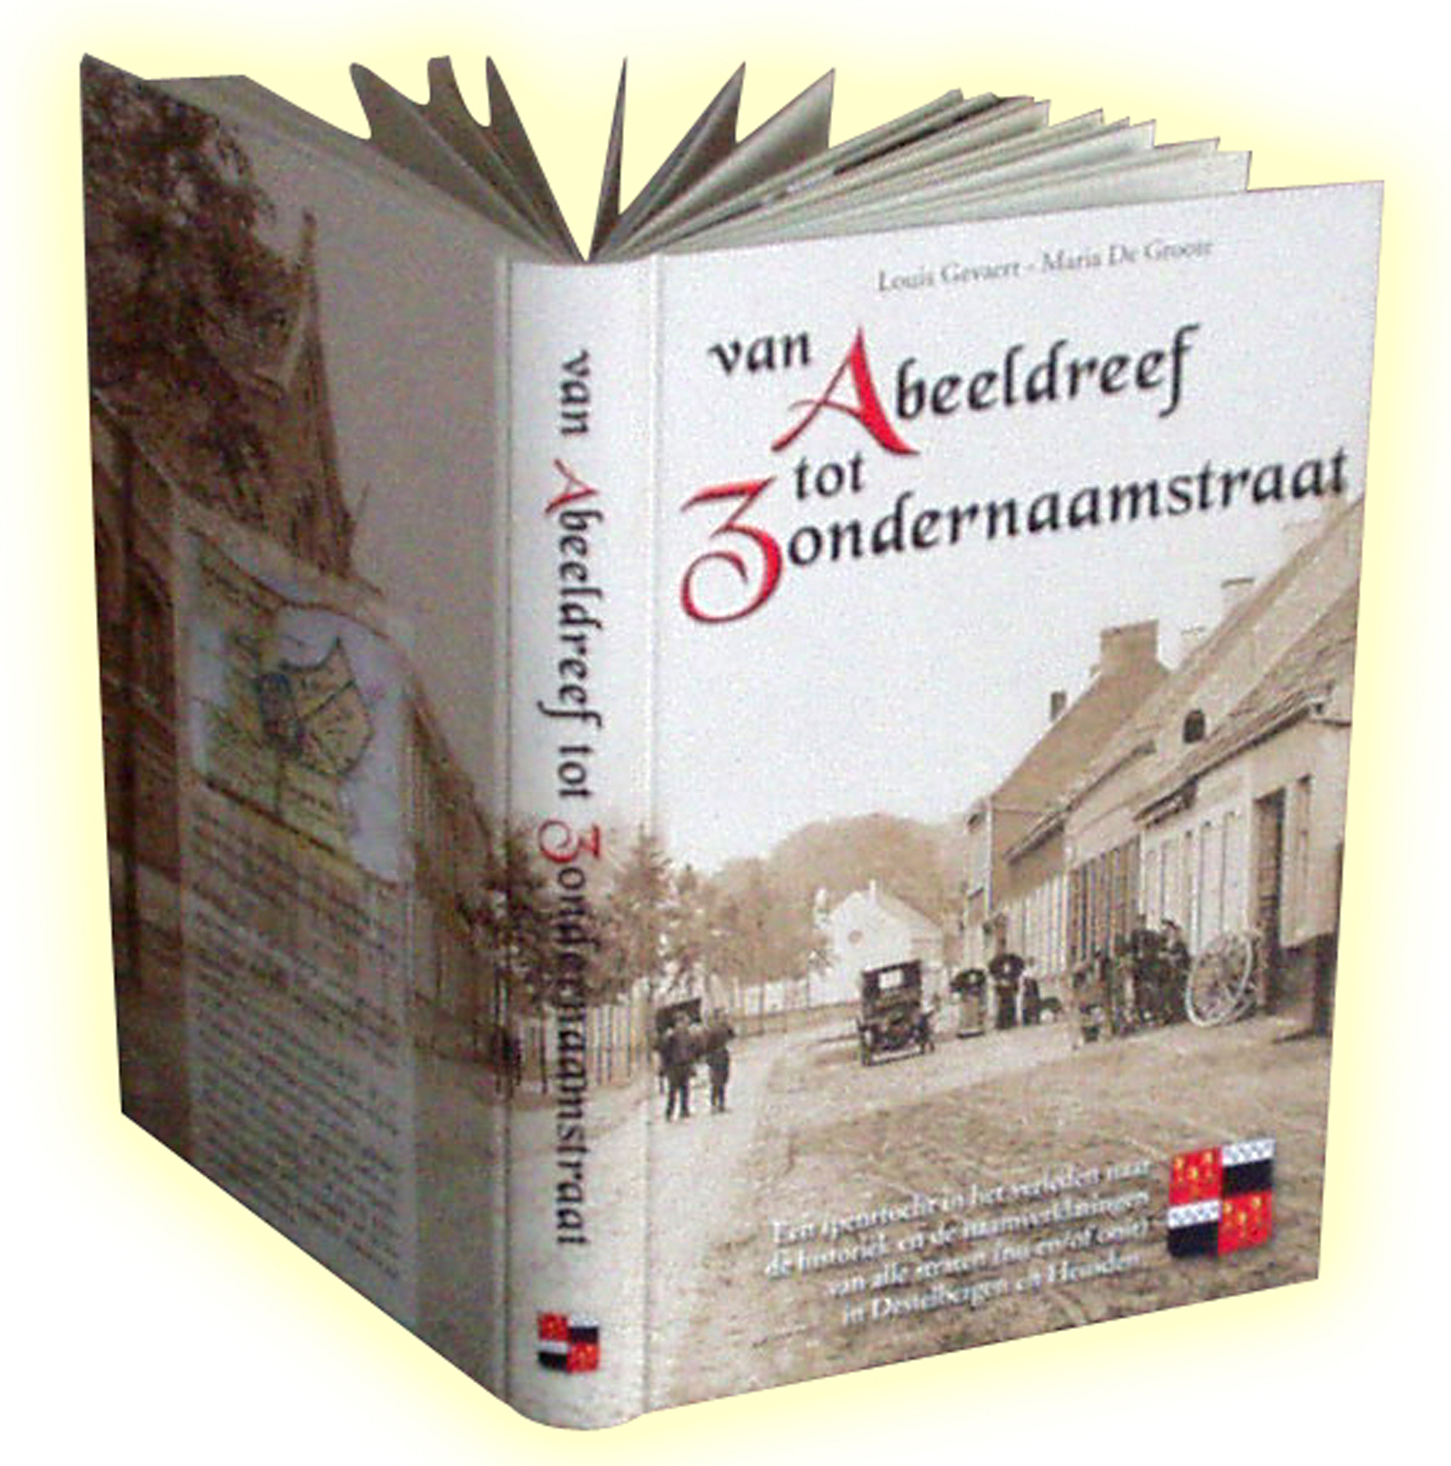 Boek Van Abeeldreef tot Zondernaamstraat